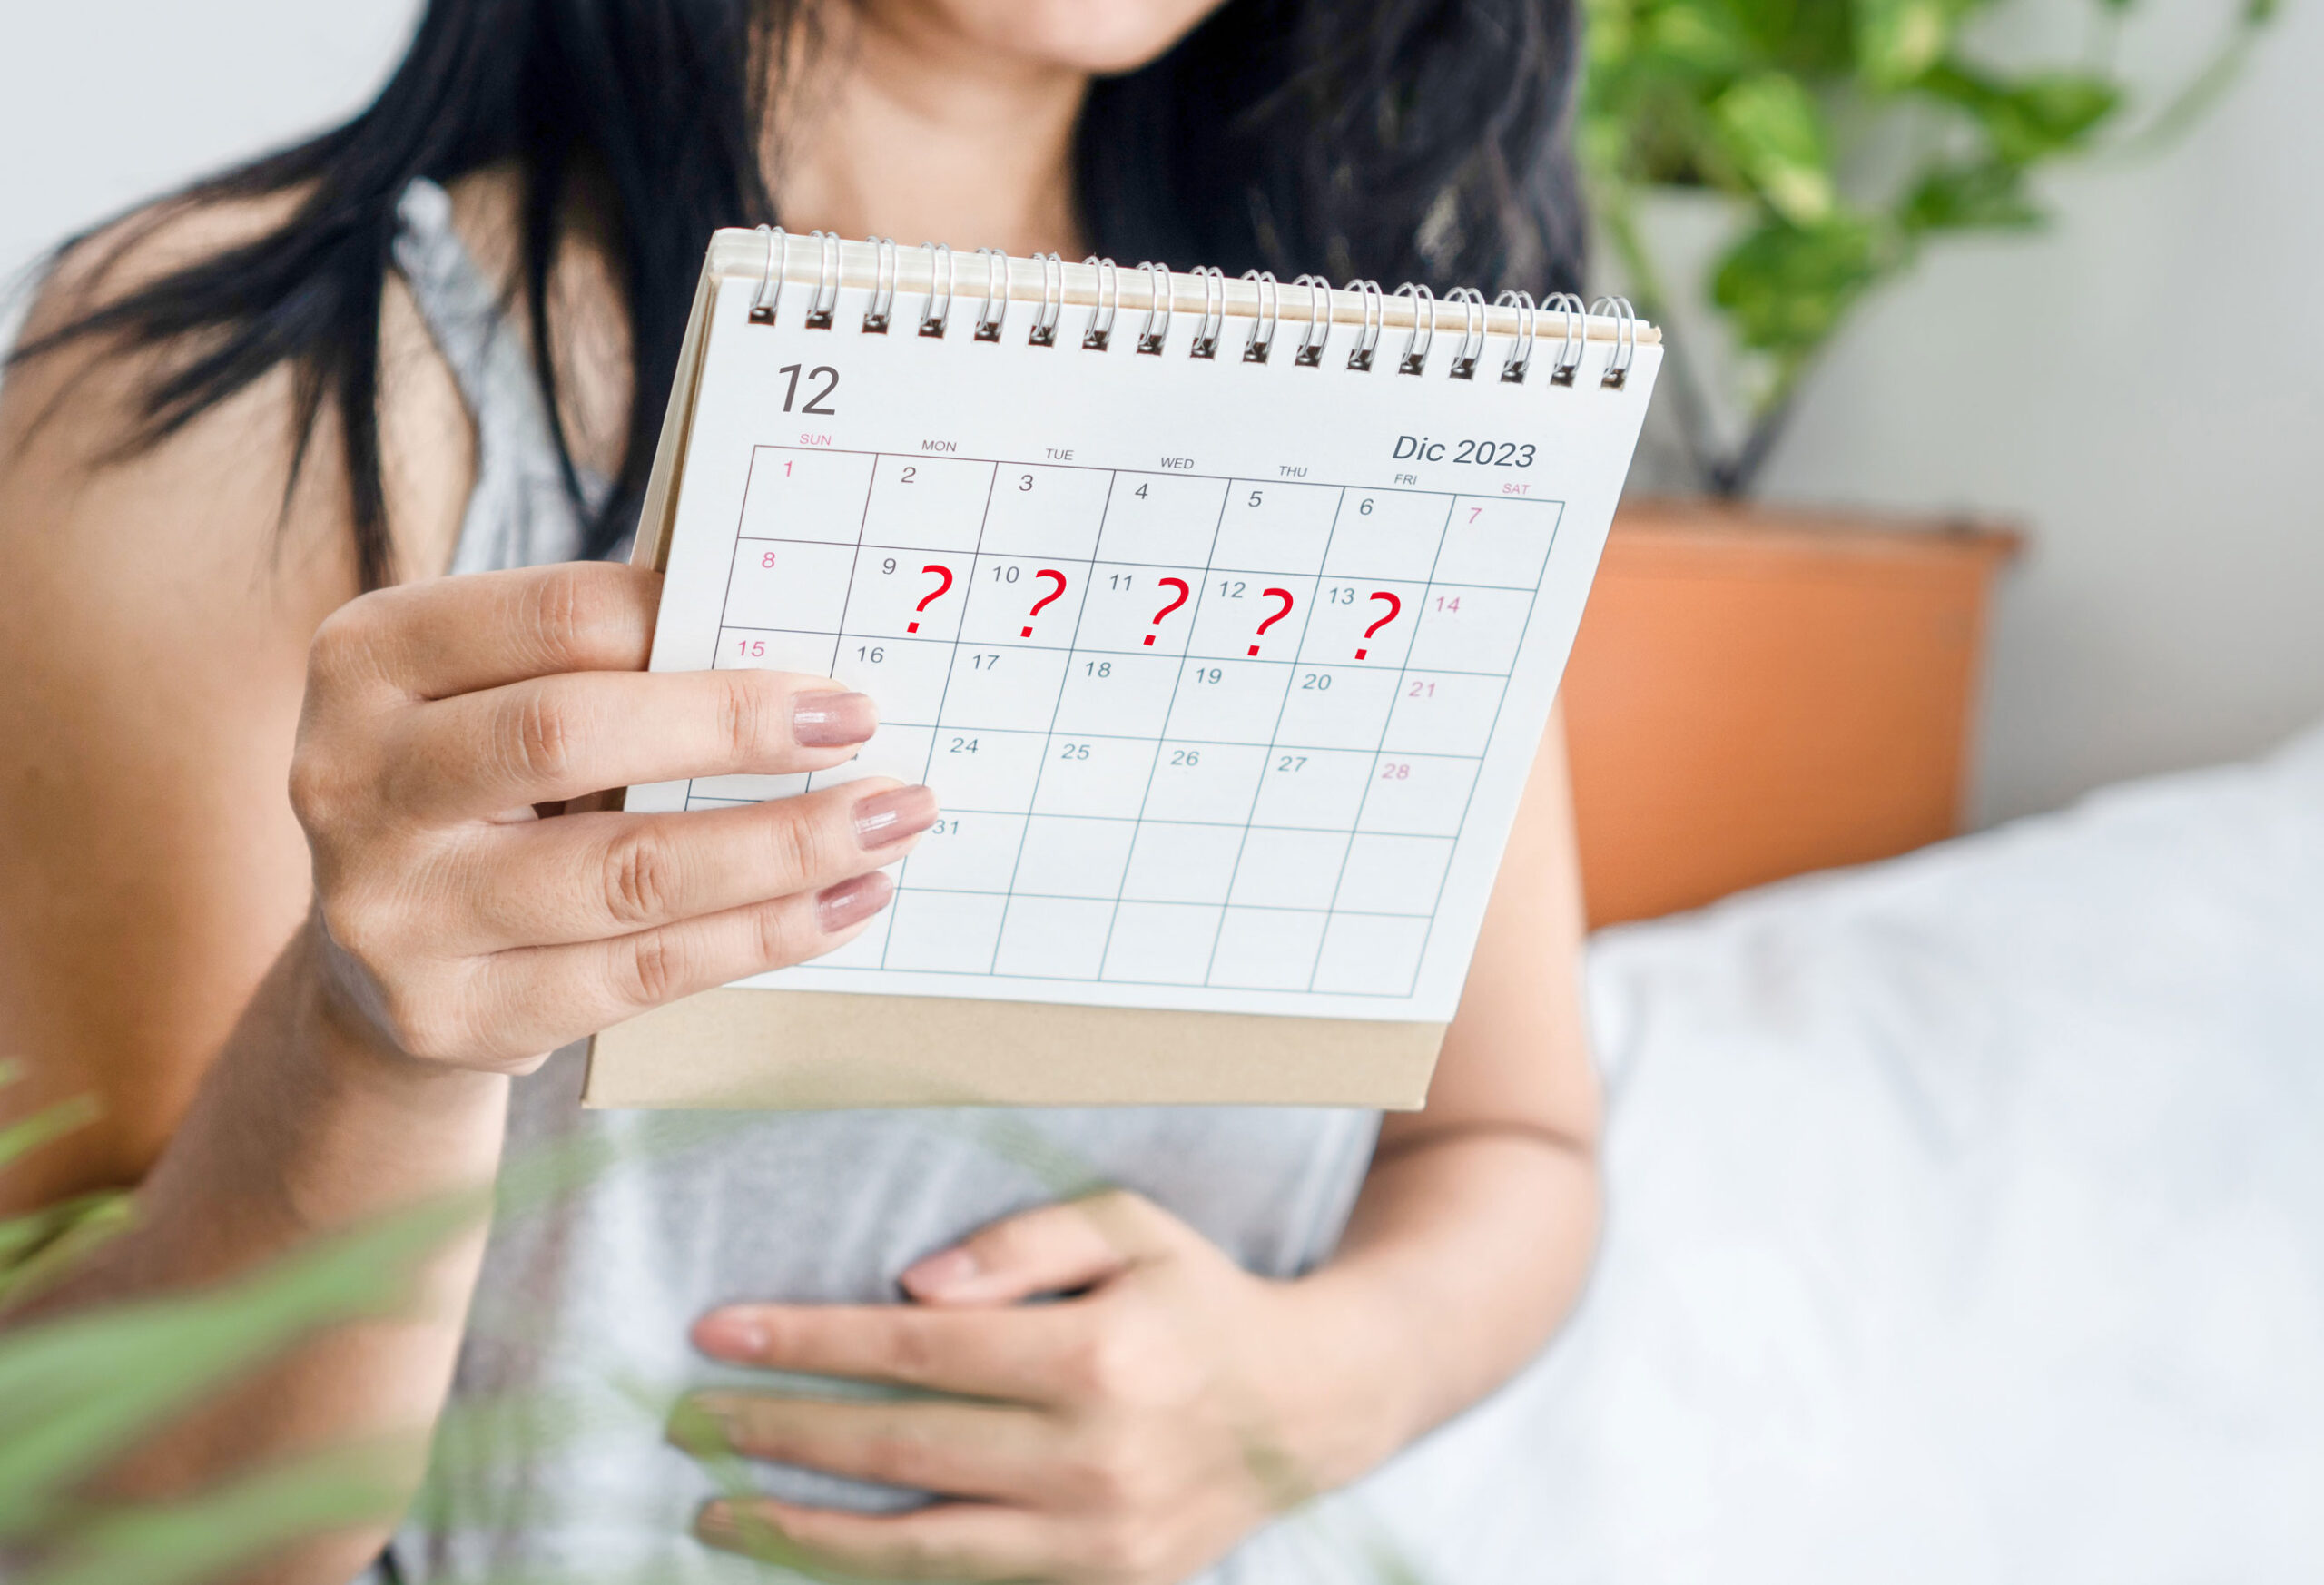 Donna con sintomi di gravidanza controlla i giorni di ritardo delle mestruazioni sul calendario